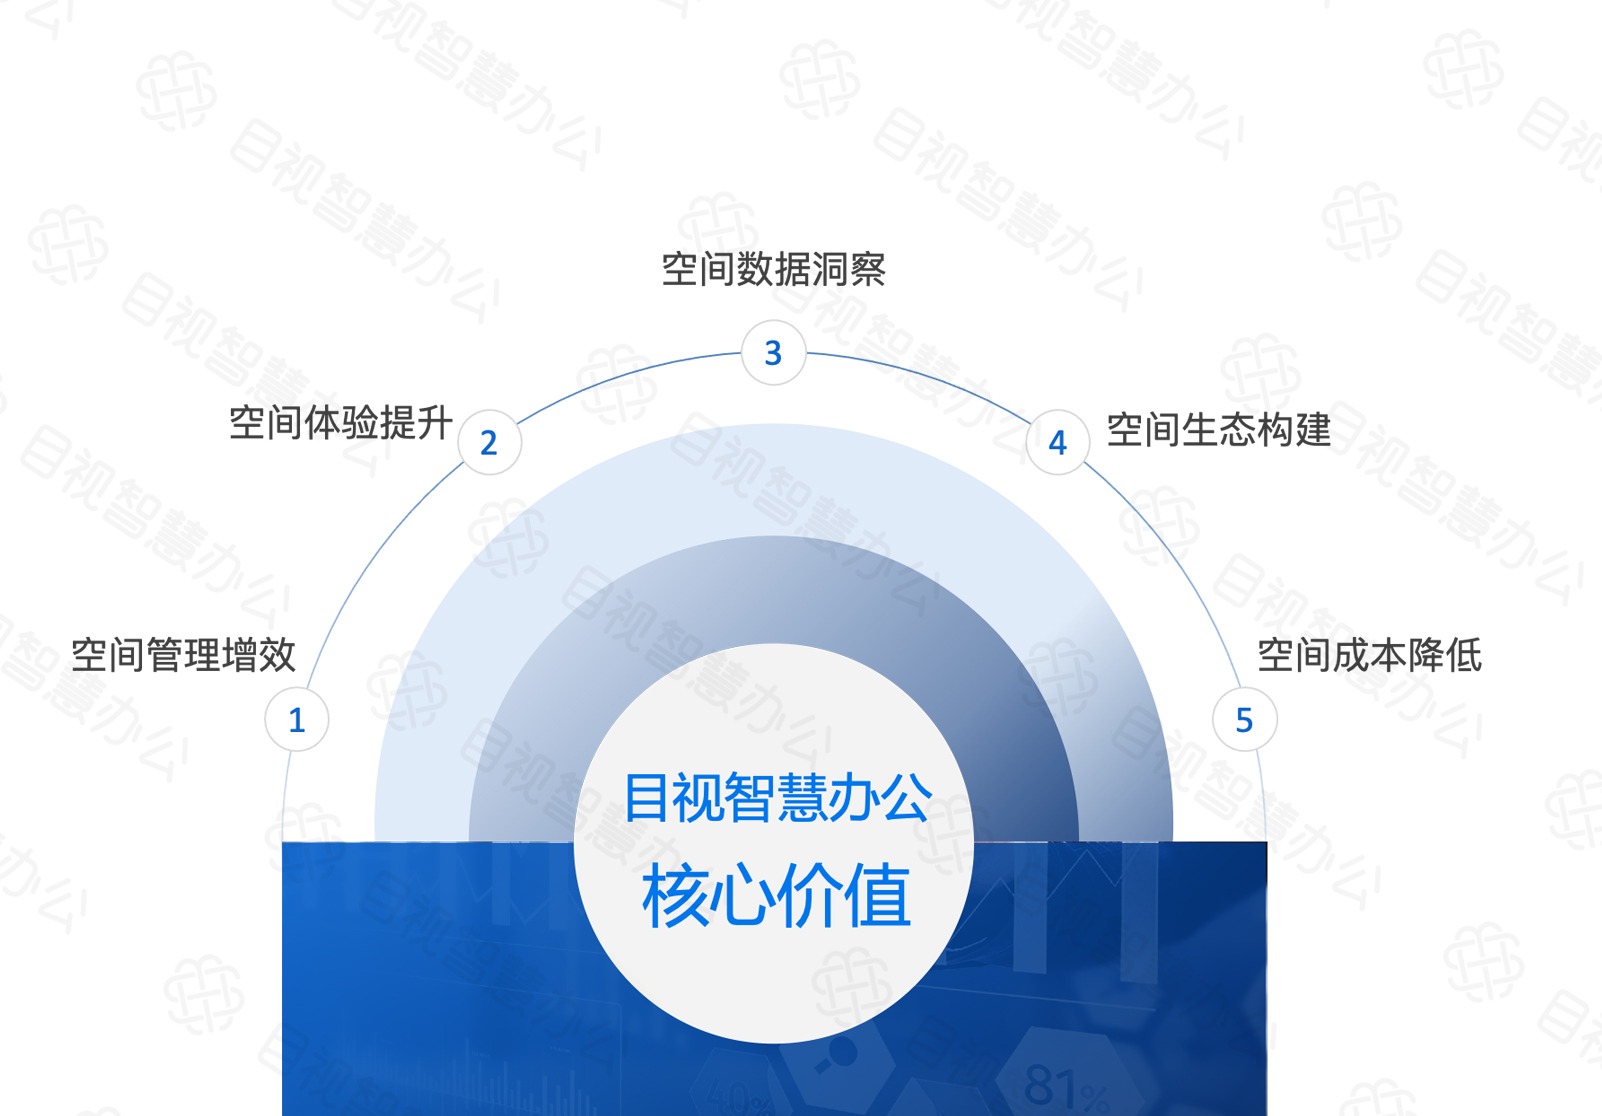 InfoComm China 2021即将开启，目视邀您共享智慧办公新未来